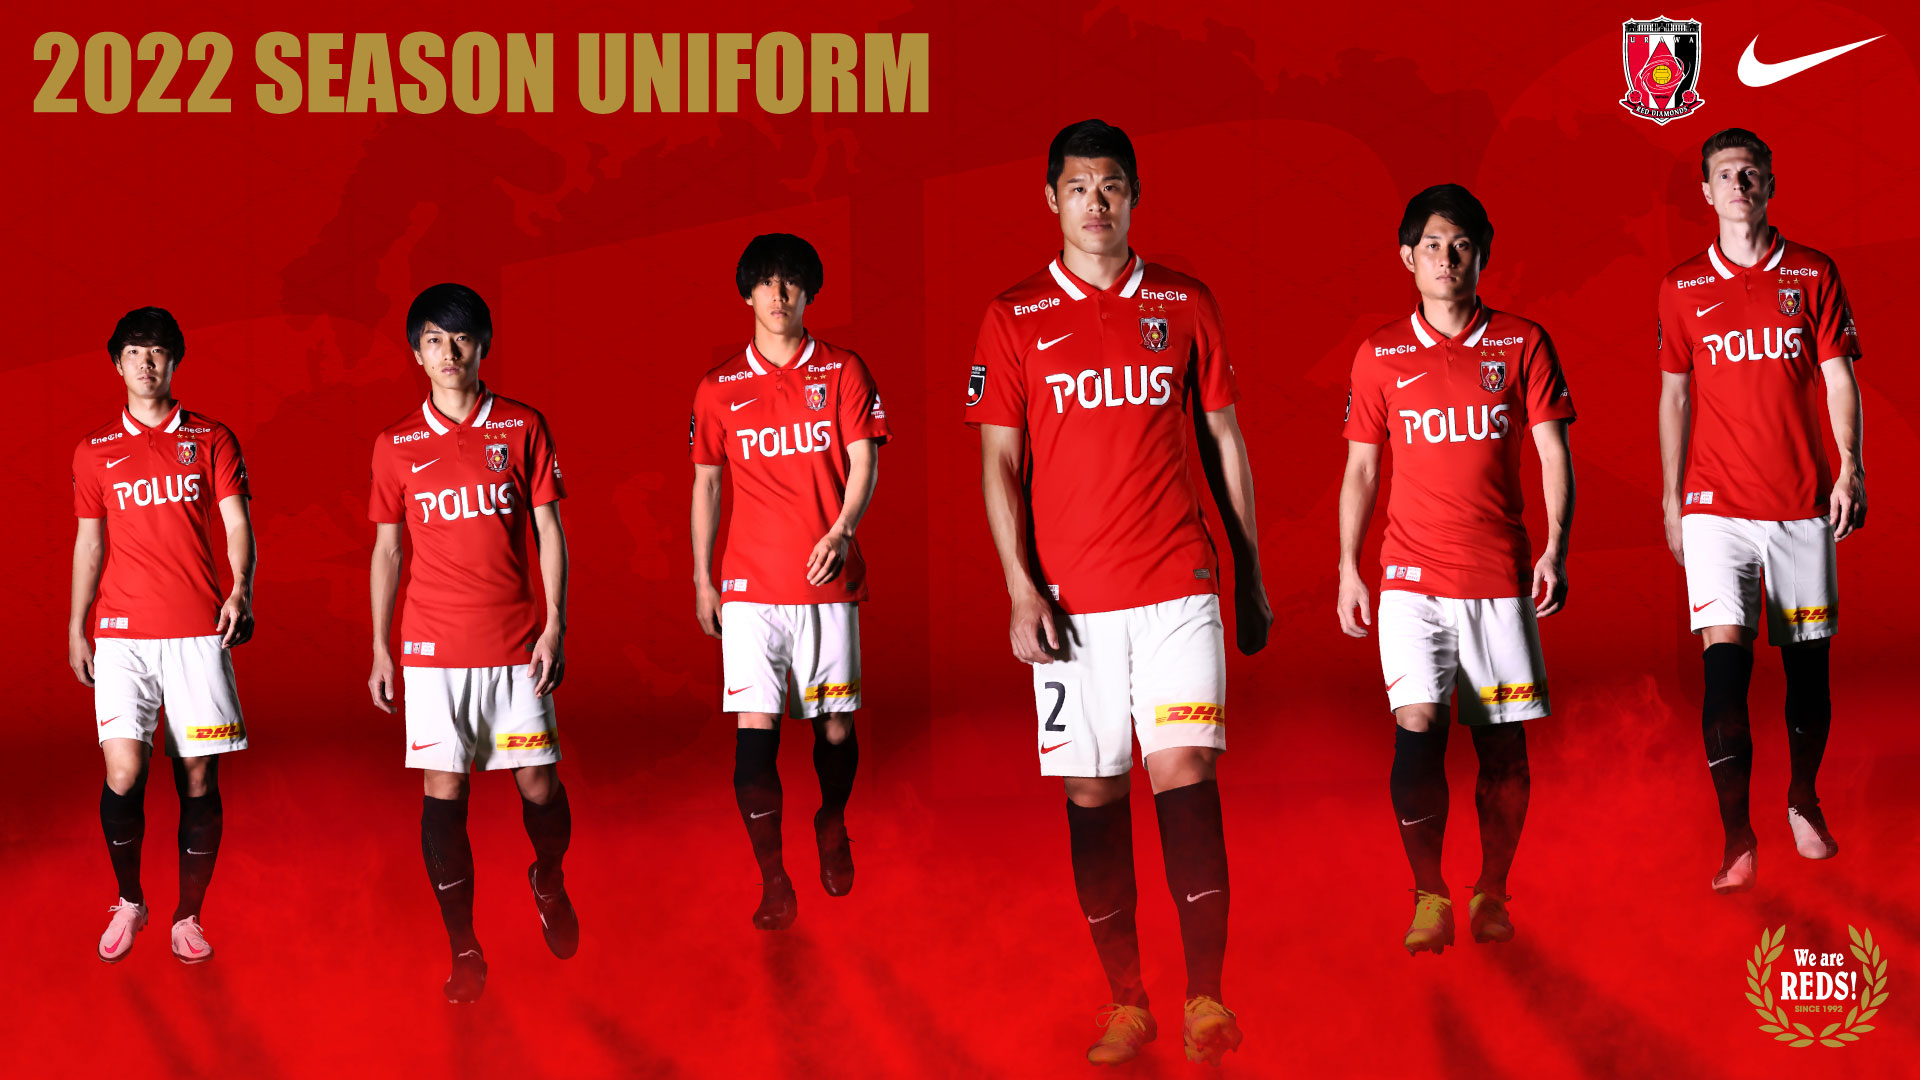 2022 Season Uniform